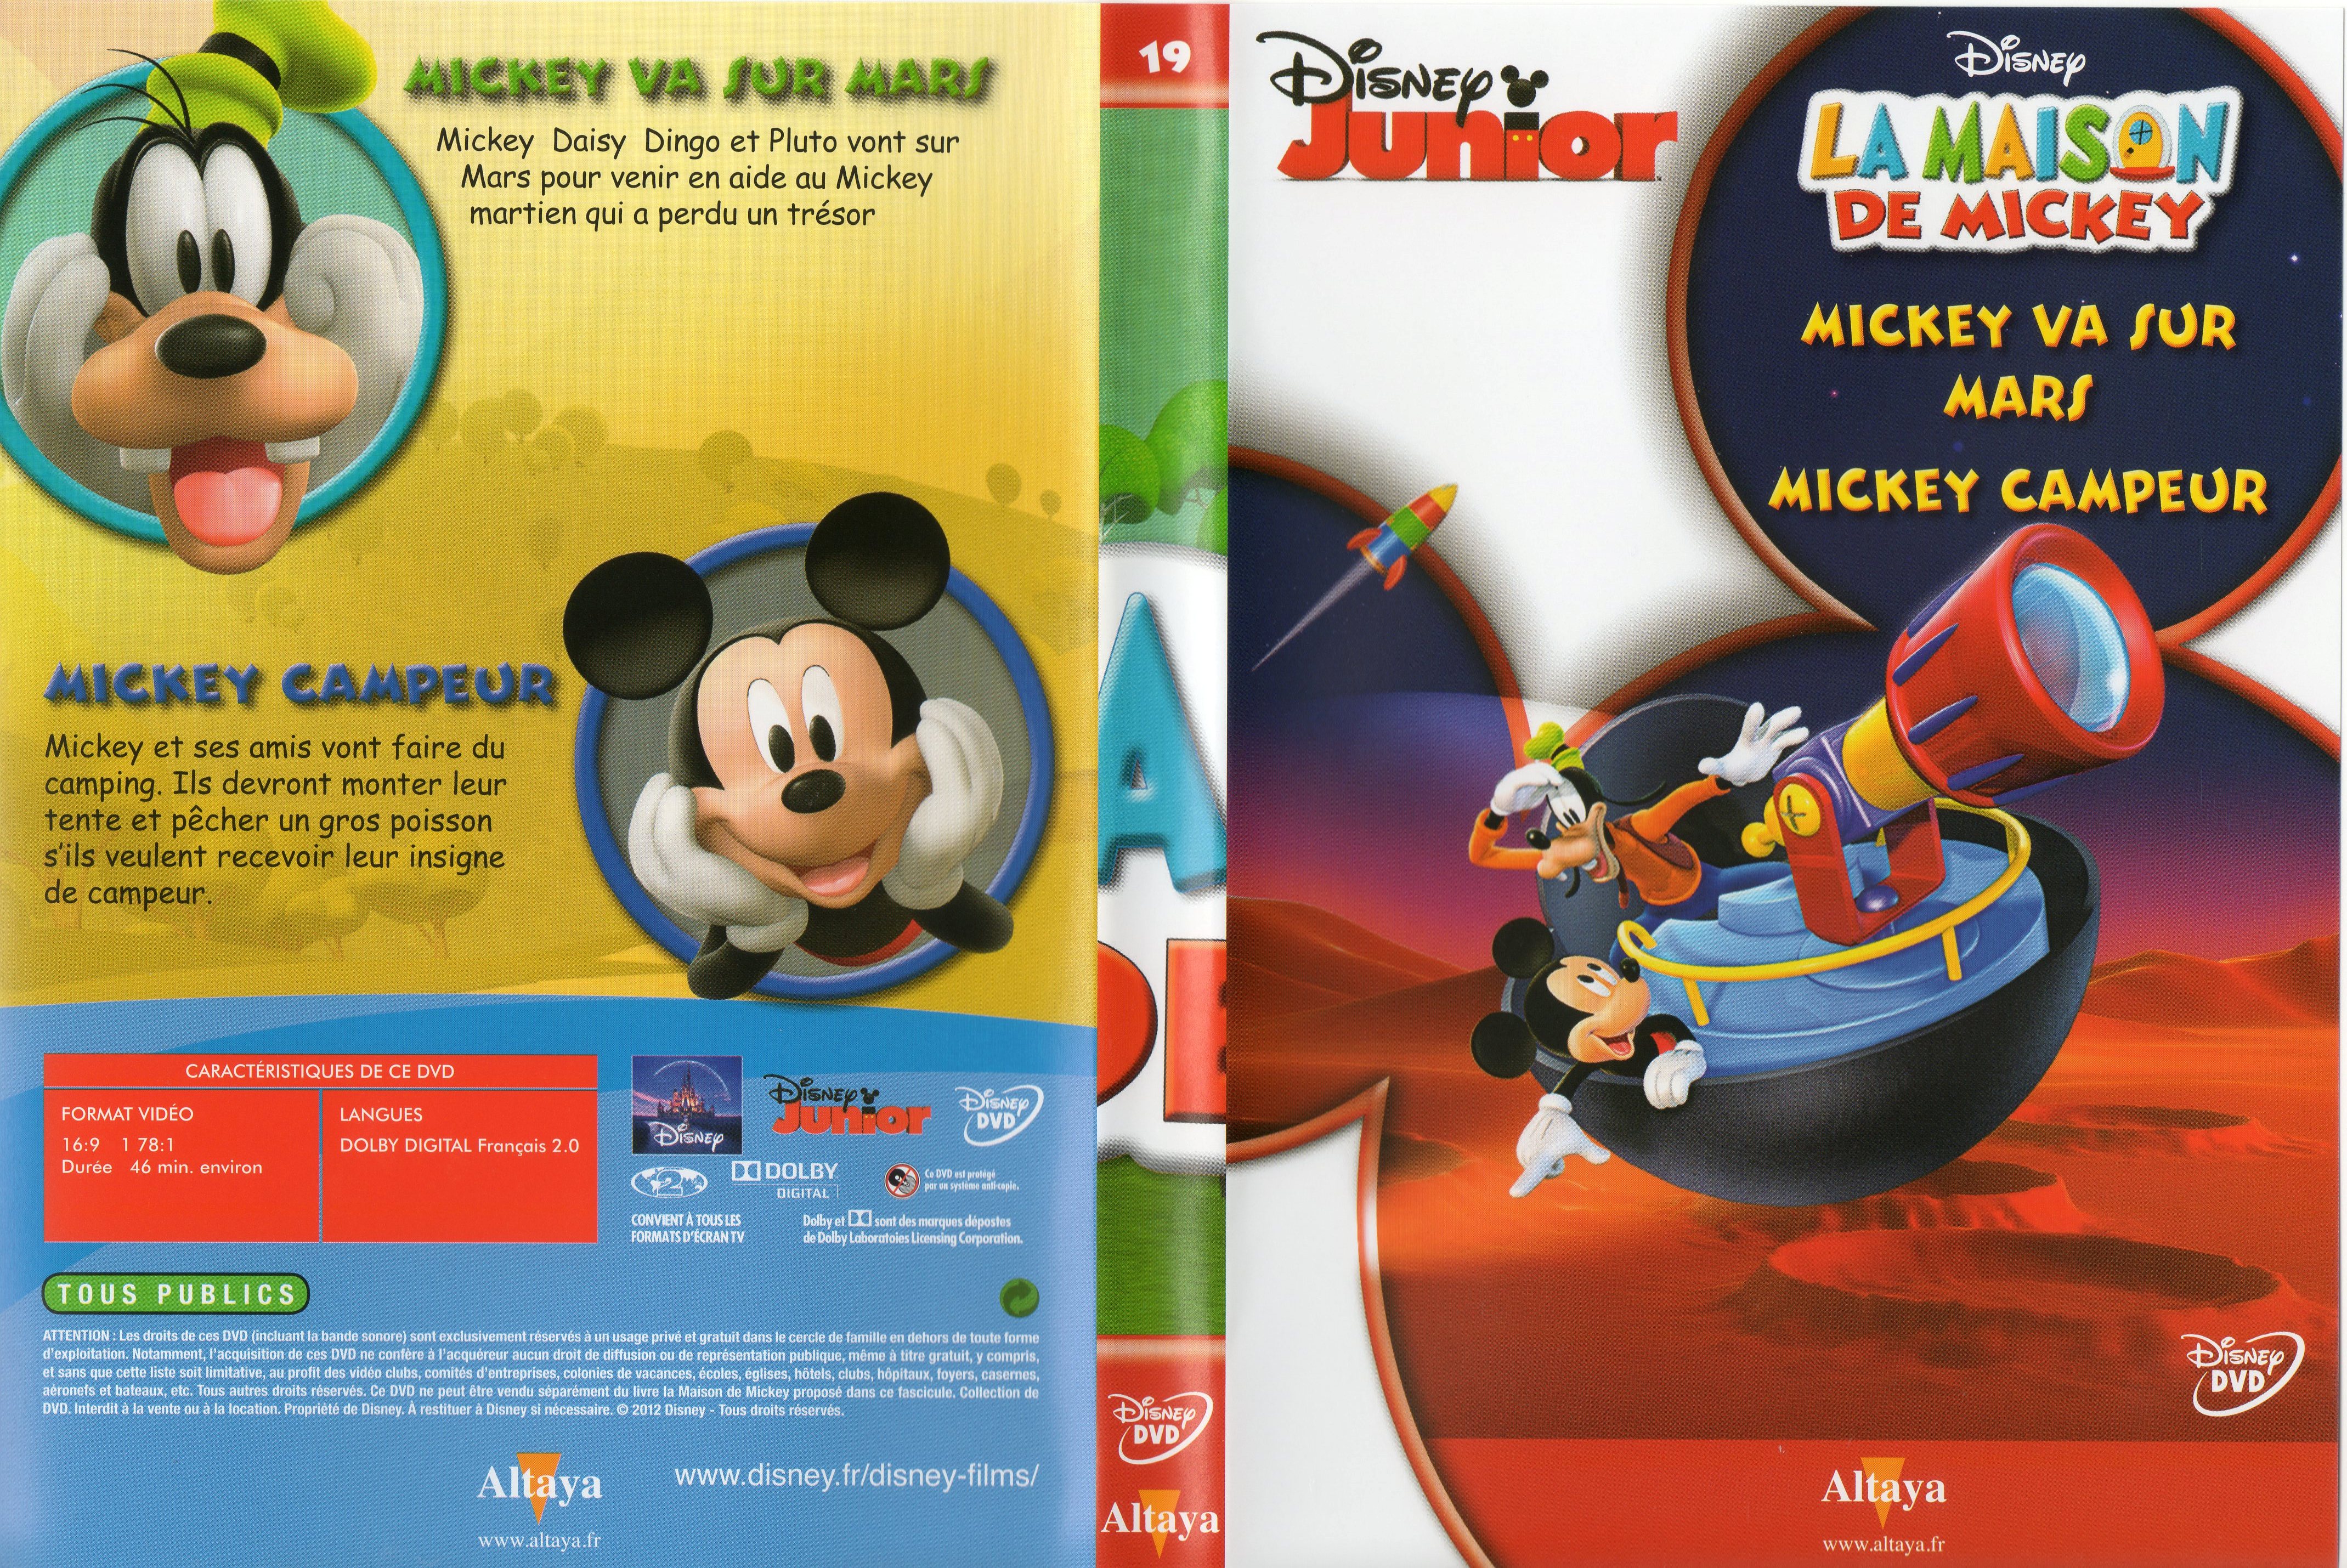 Jaquette DVD La maison de Mickey DVD 19